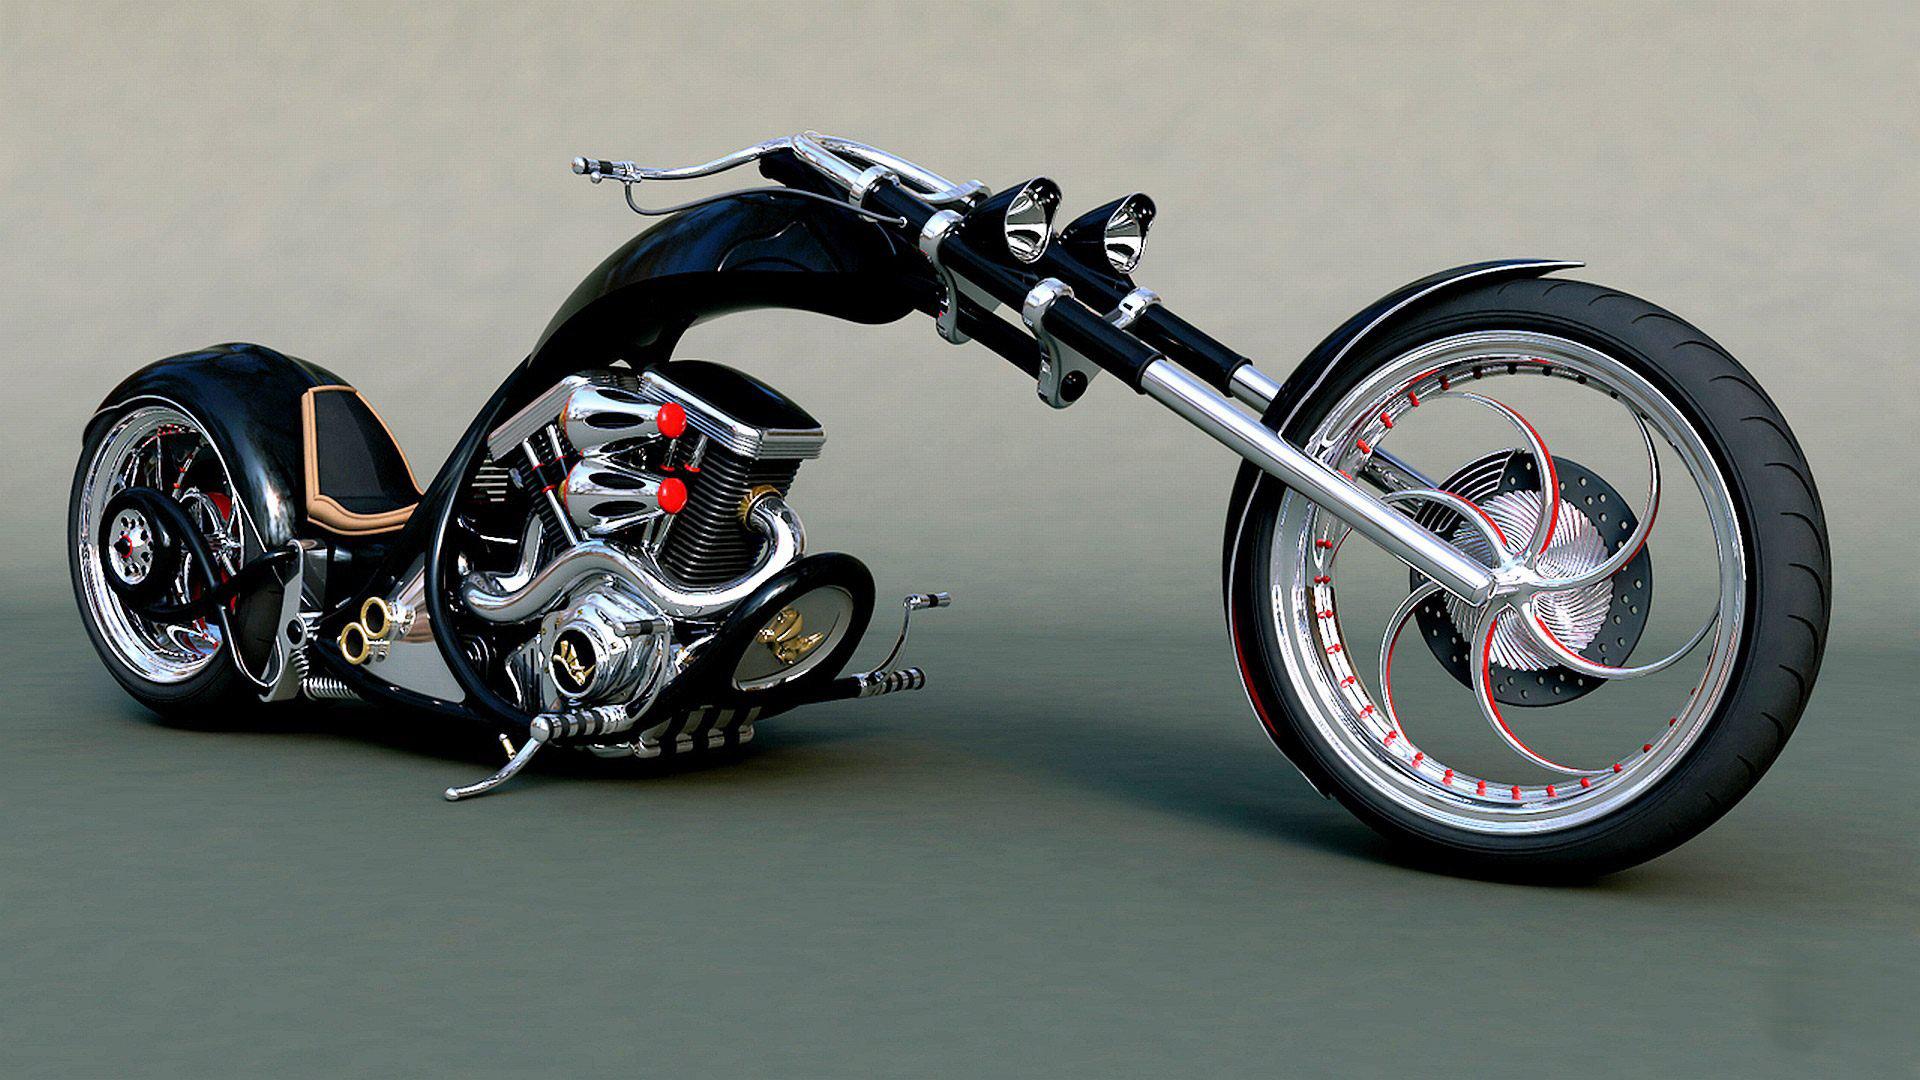 Hd Chopper Bike Tuning Motorbike Motorcycle Hot Rod - Undertaker Bike - HD Wallpaper 